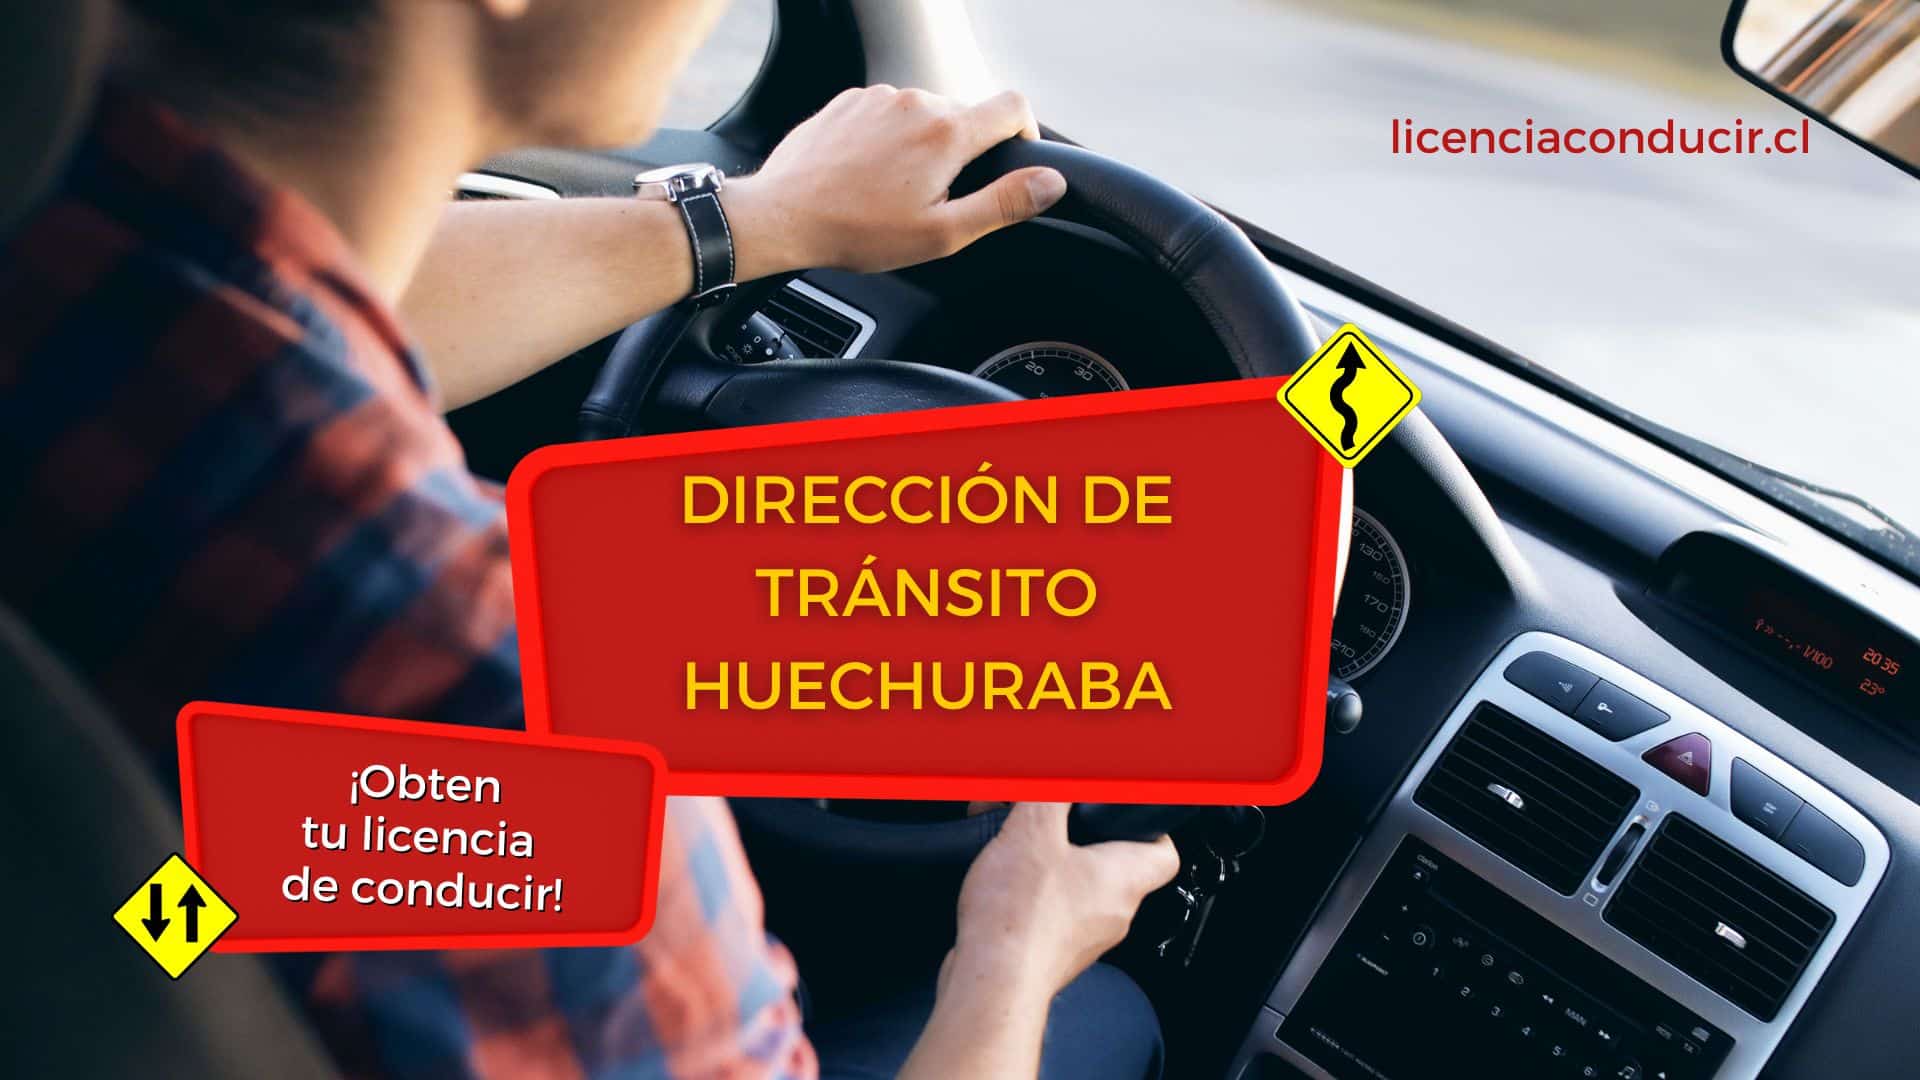 Obtener licencia conducir en huechuraba